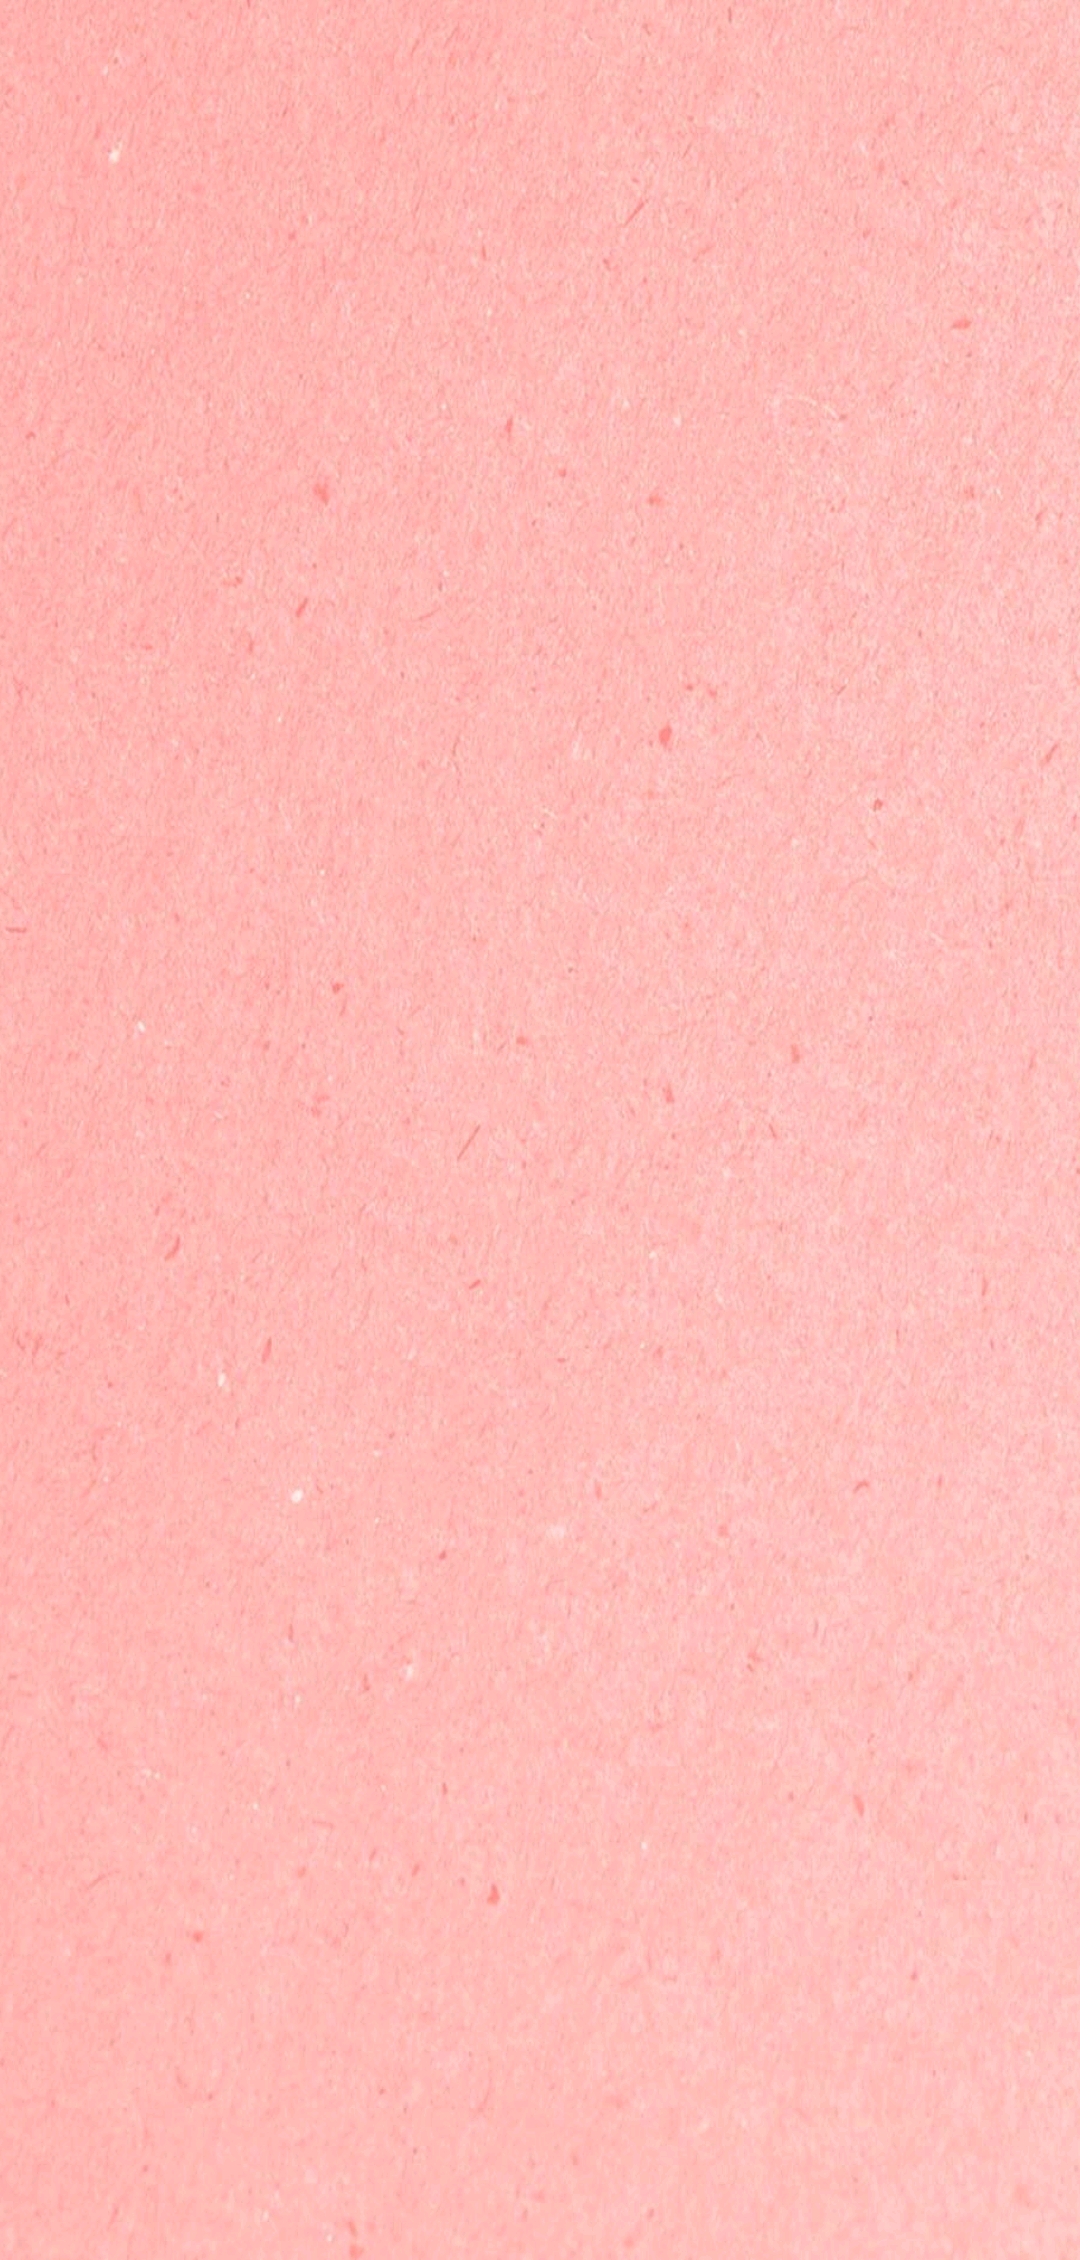 超级淡粉色纯色底图图片